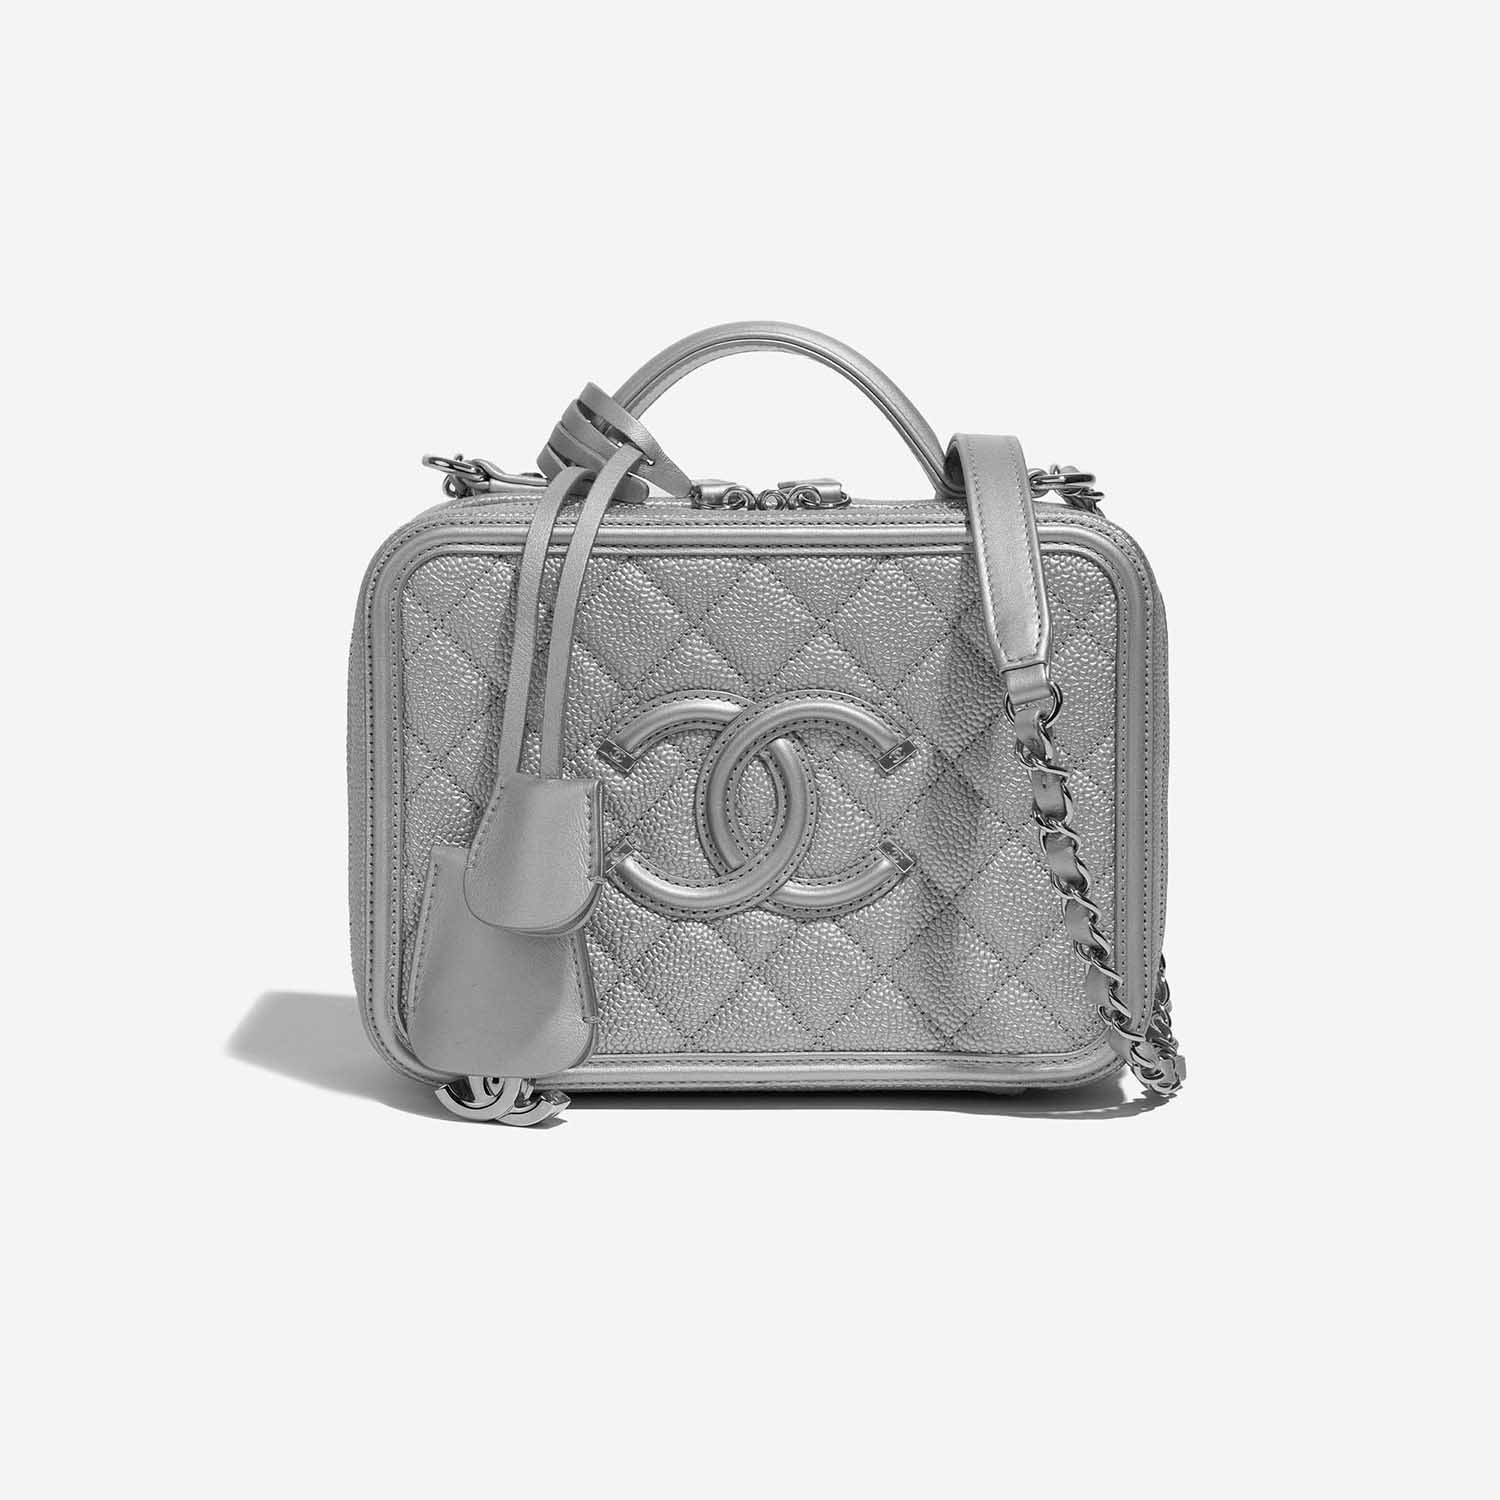 Pre-owned Chanel Tasche Vanity Case Medium Caviar-Leder Silver Silver Front | Verkaufen Sie Ihre Designer-Tasche auf Saclab.com